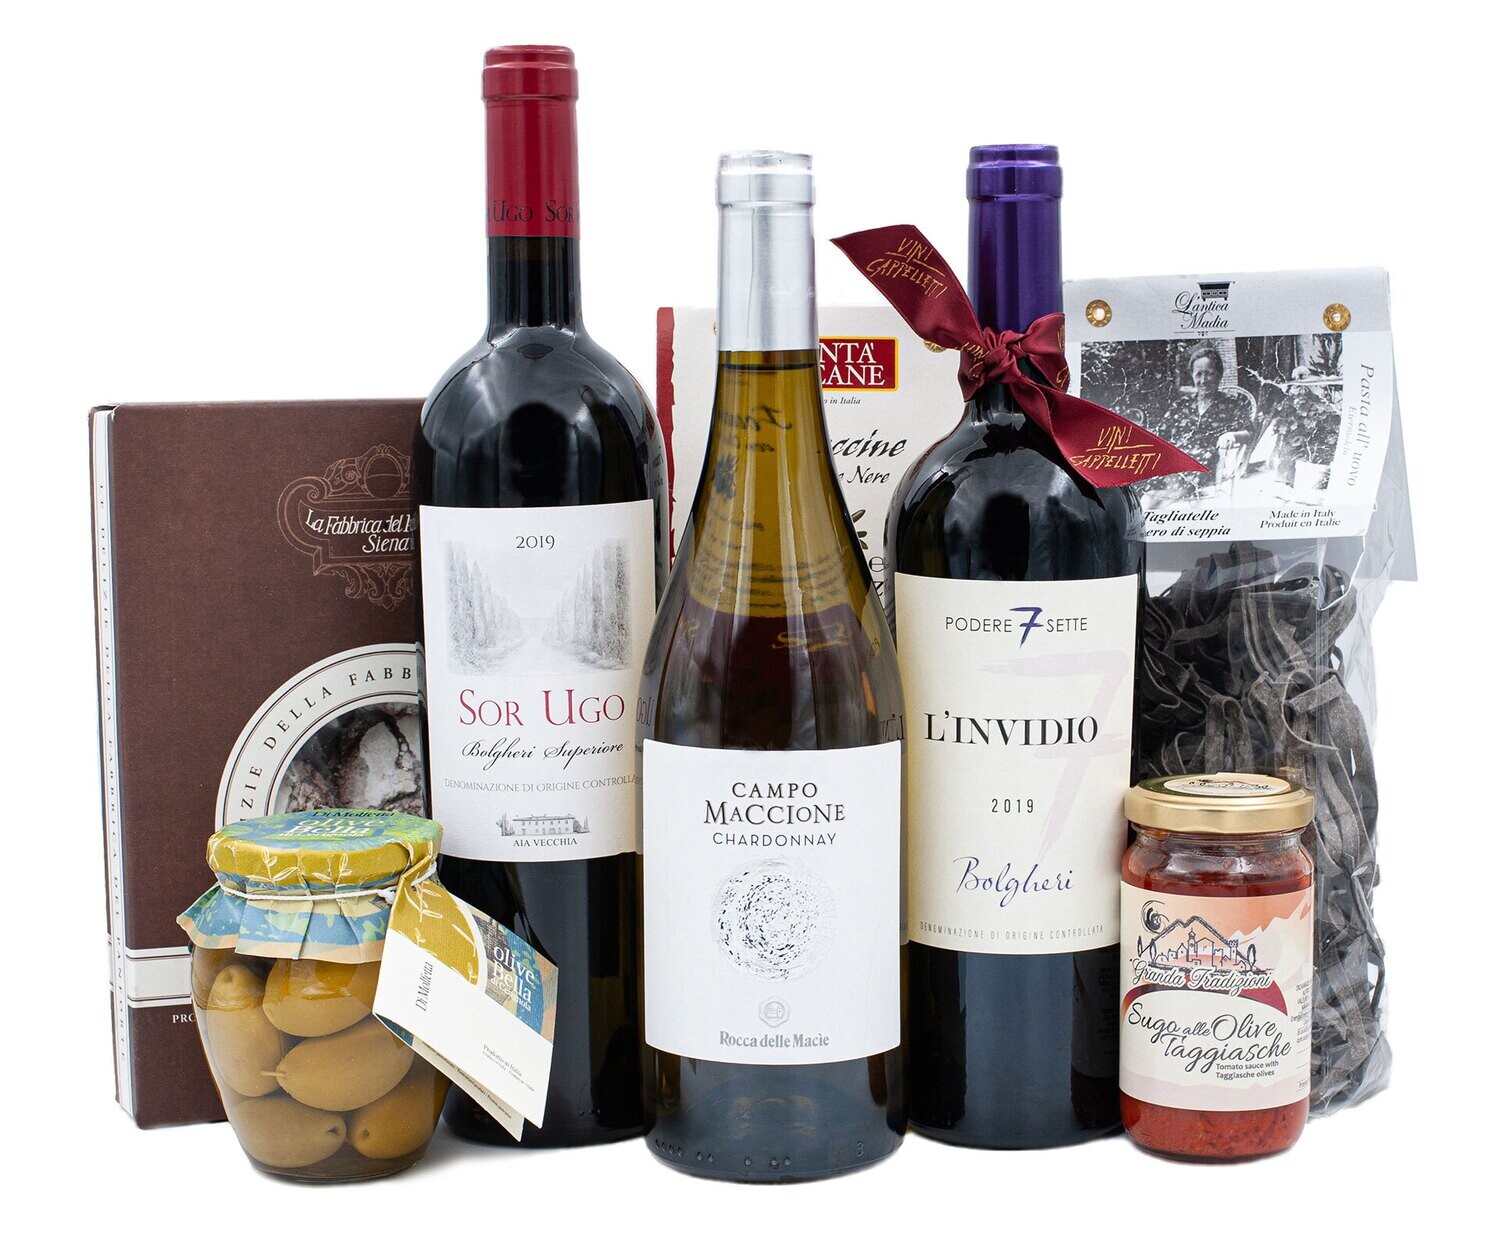 Geschenkkorb «Toskana»
Wein,  Pasta, Sugo, Oliven und mehr